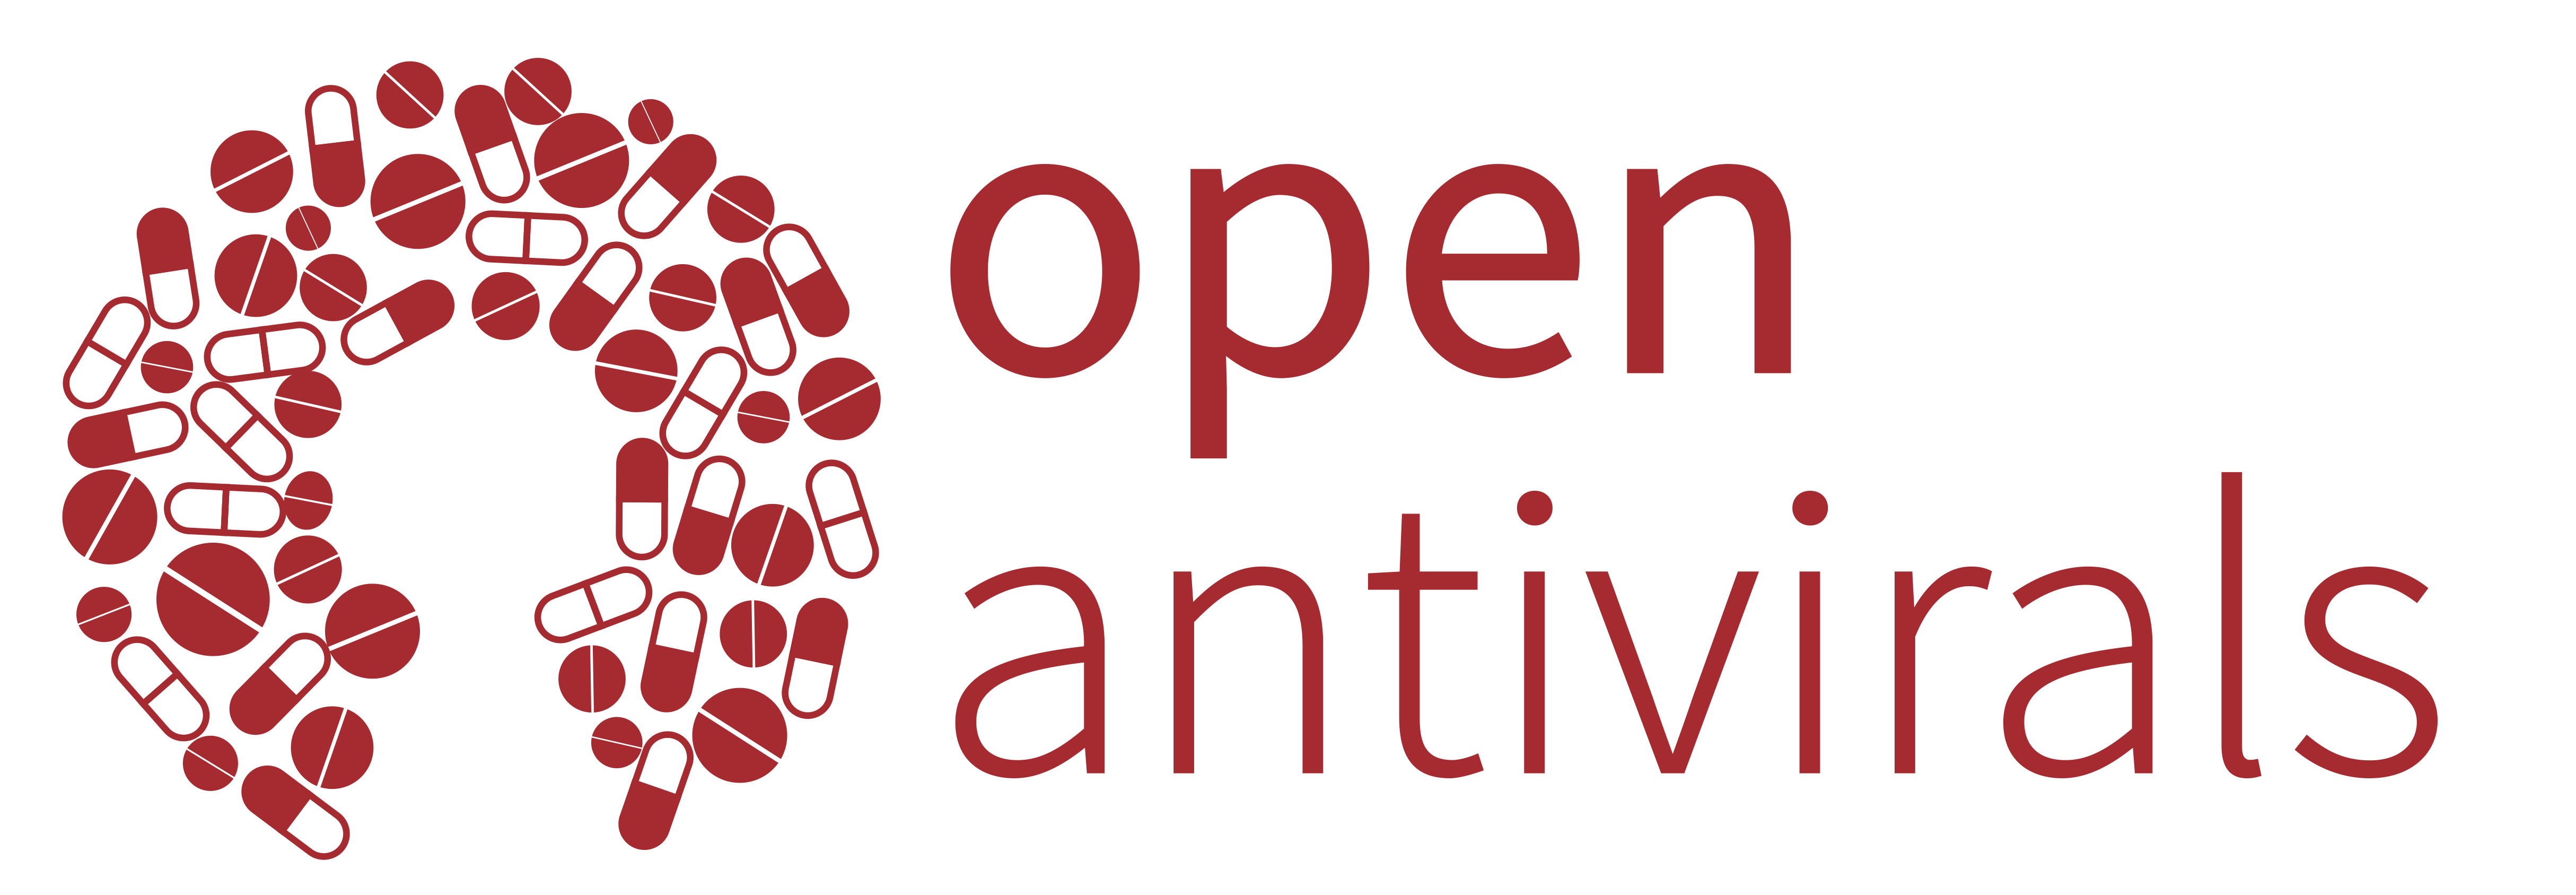 Open Antivirals logo